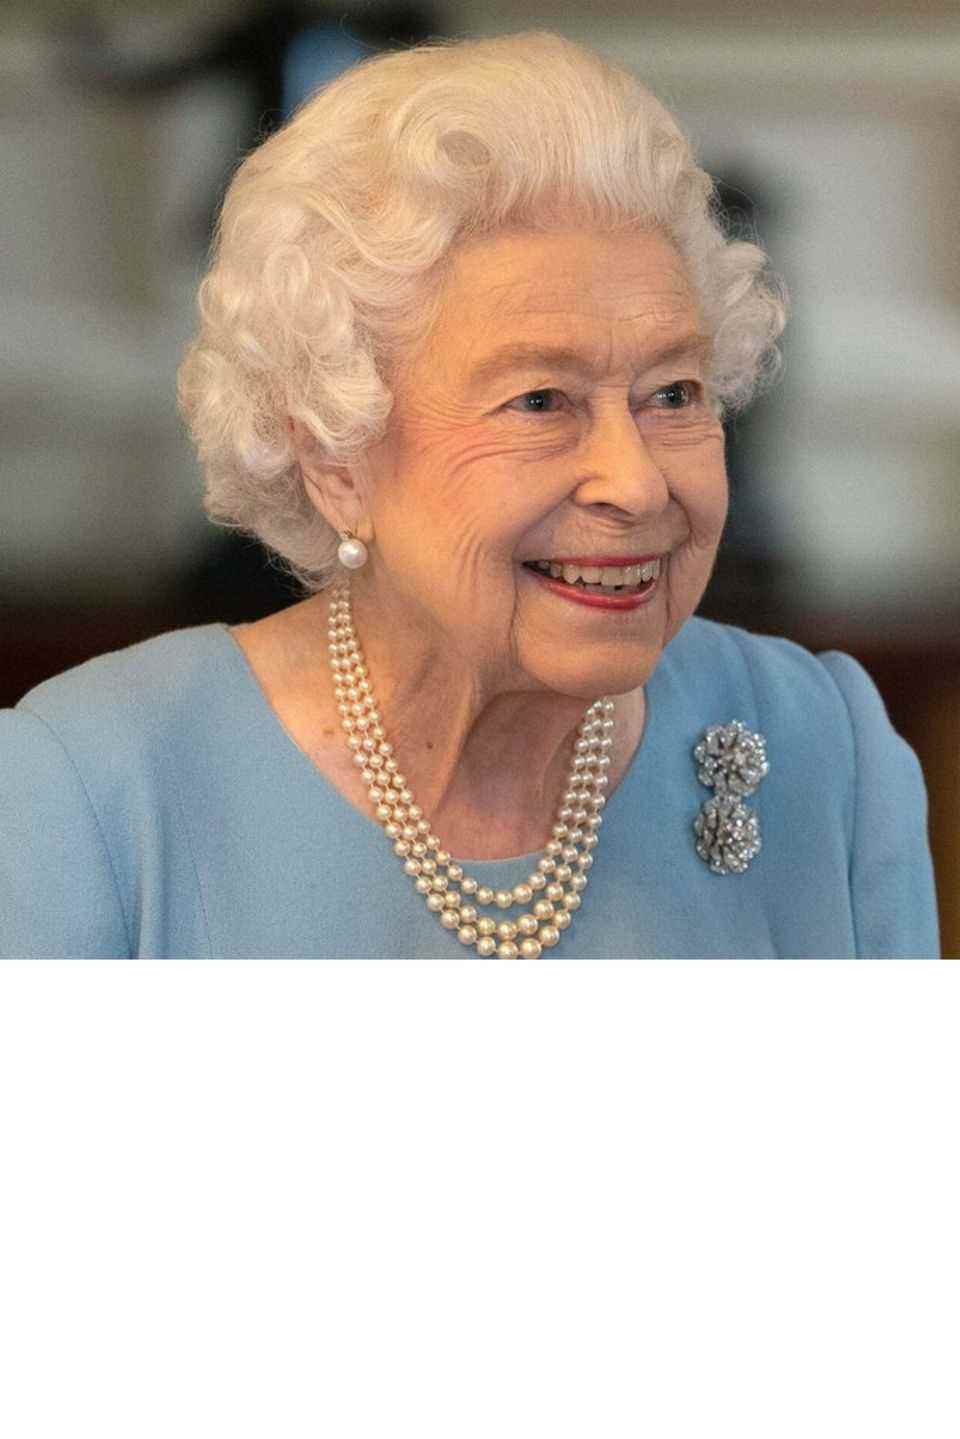 Queen Elizabeth II. möchte am Dienstag eine Rede vor dem Parlament halten.